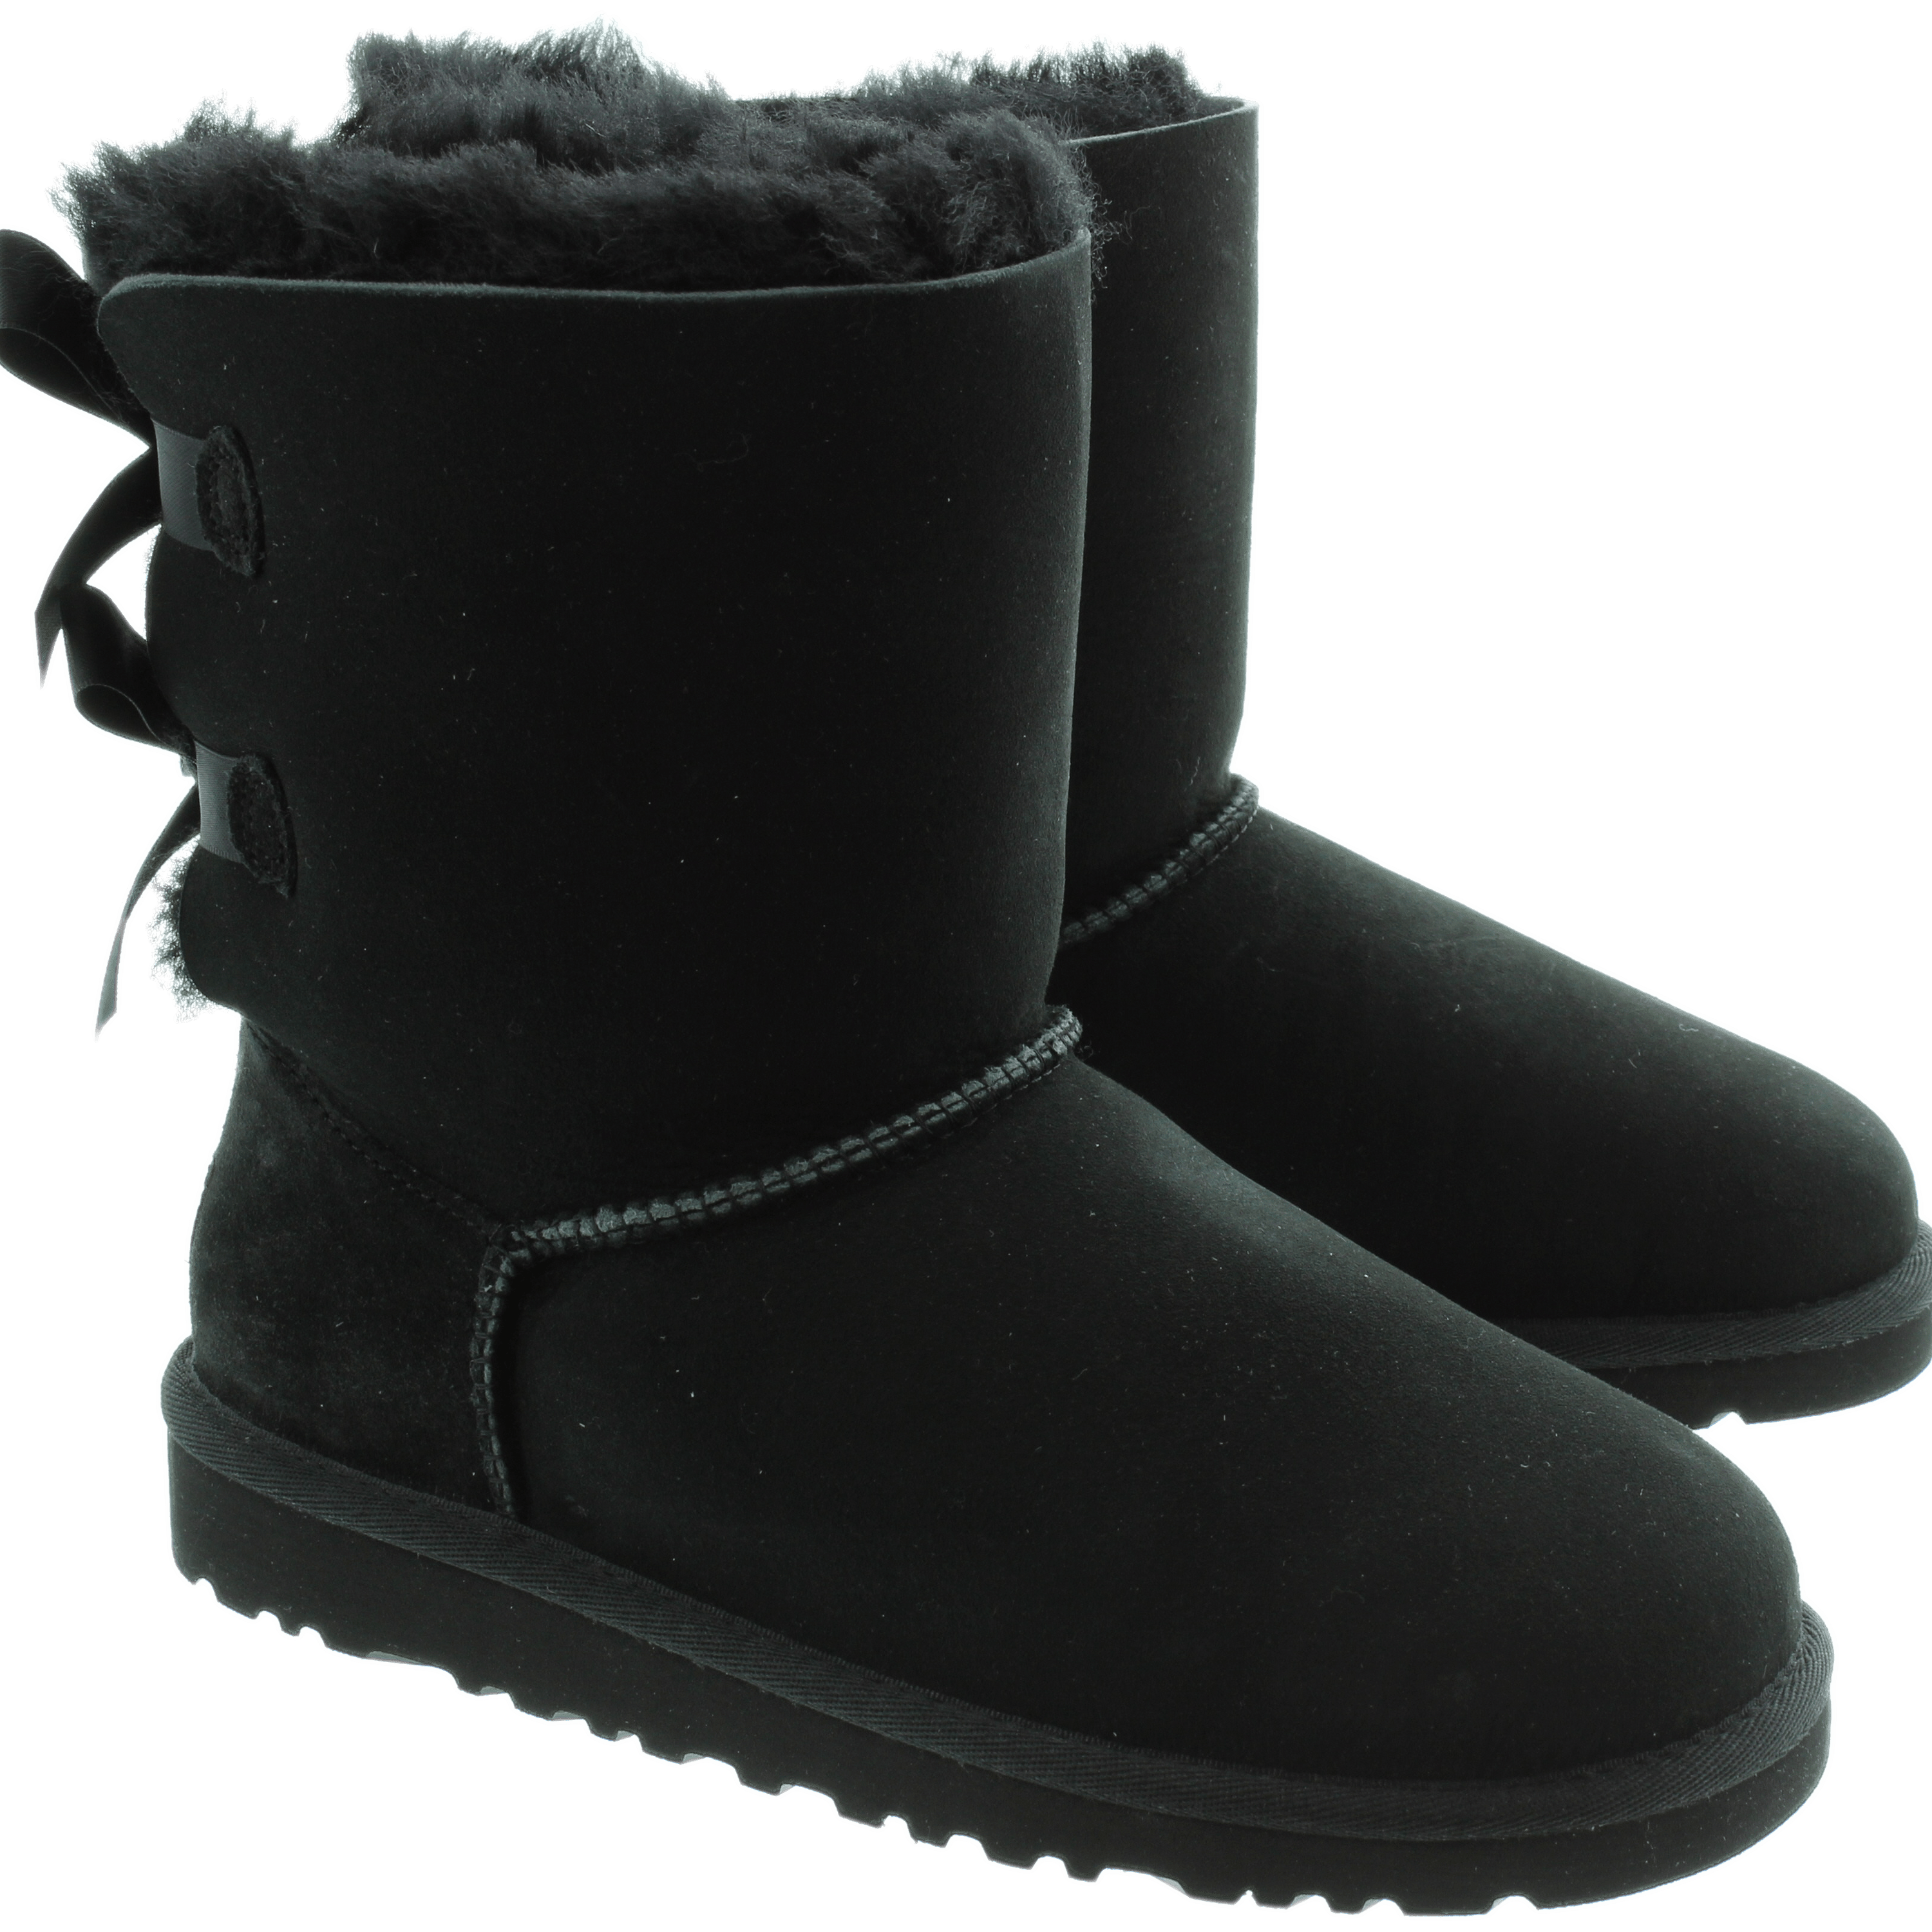 Black UGG Winter Boots For Kids transparent PNG.